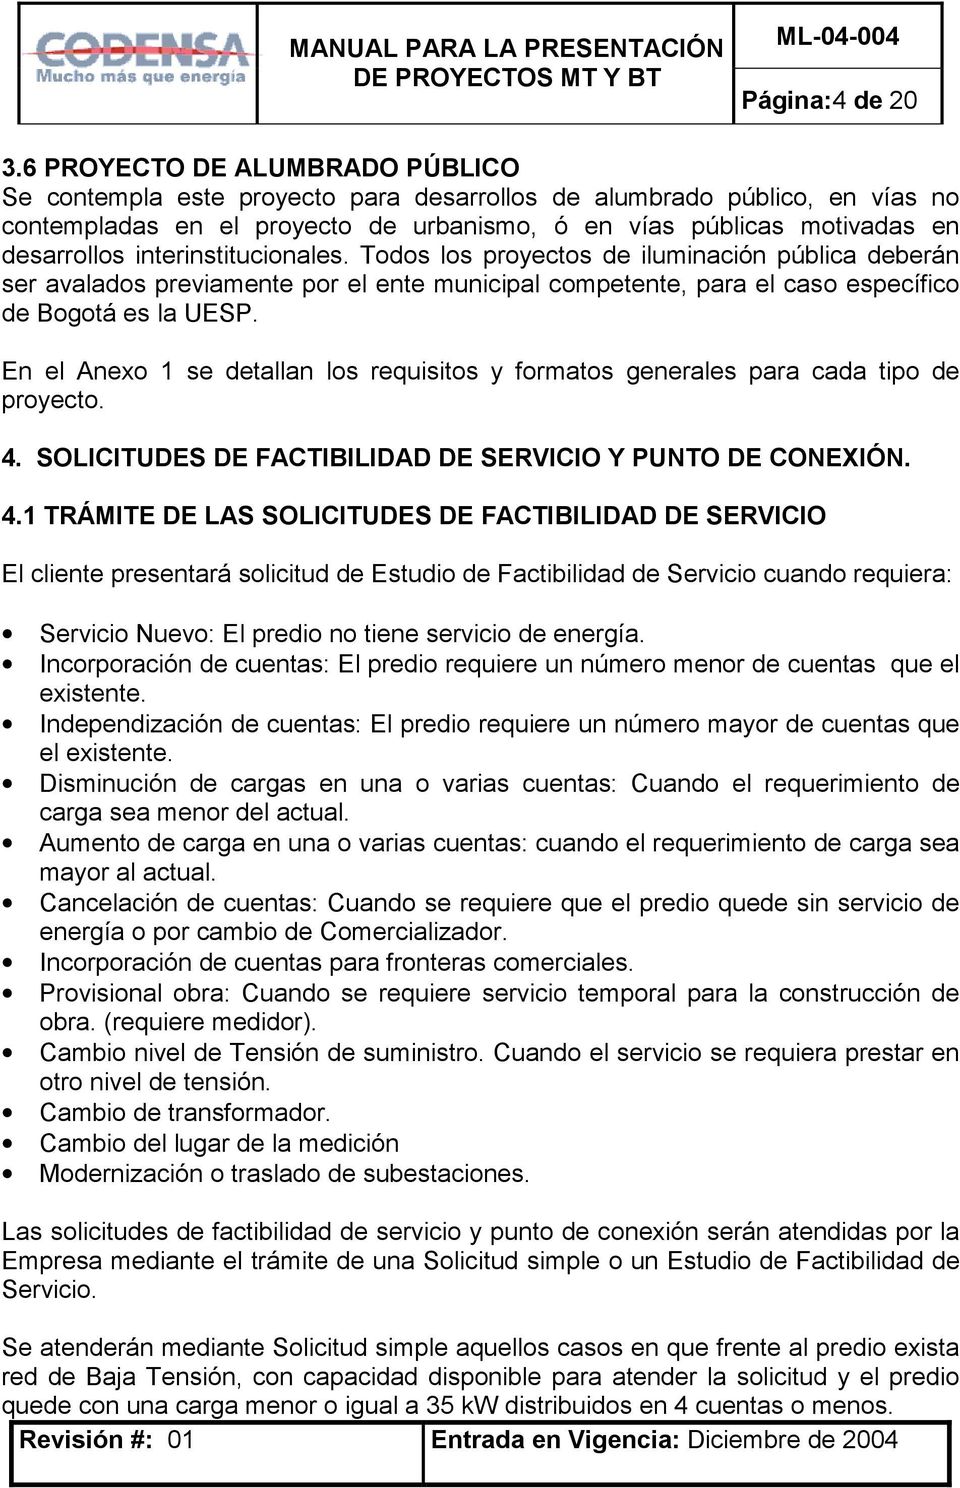 interinstitucionales. Todos los proyectos de iluminación pública deberán ser avalados previamente por el ente municipal competente, para el caso específico de Bogotá es la UESP.